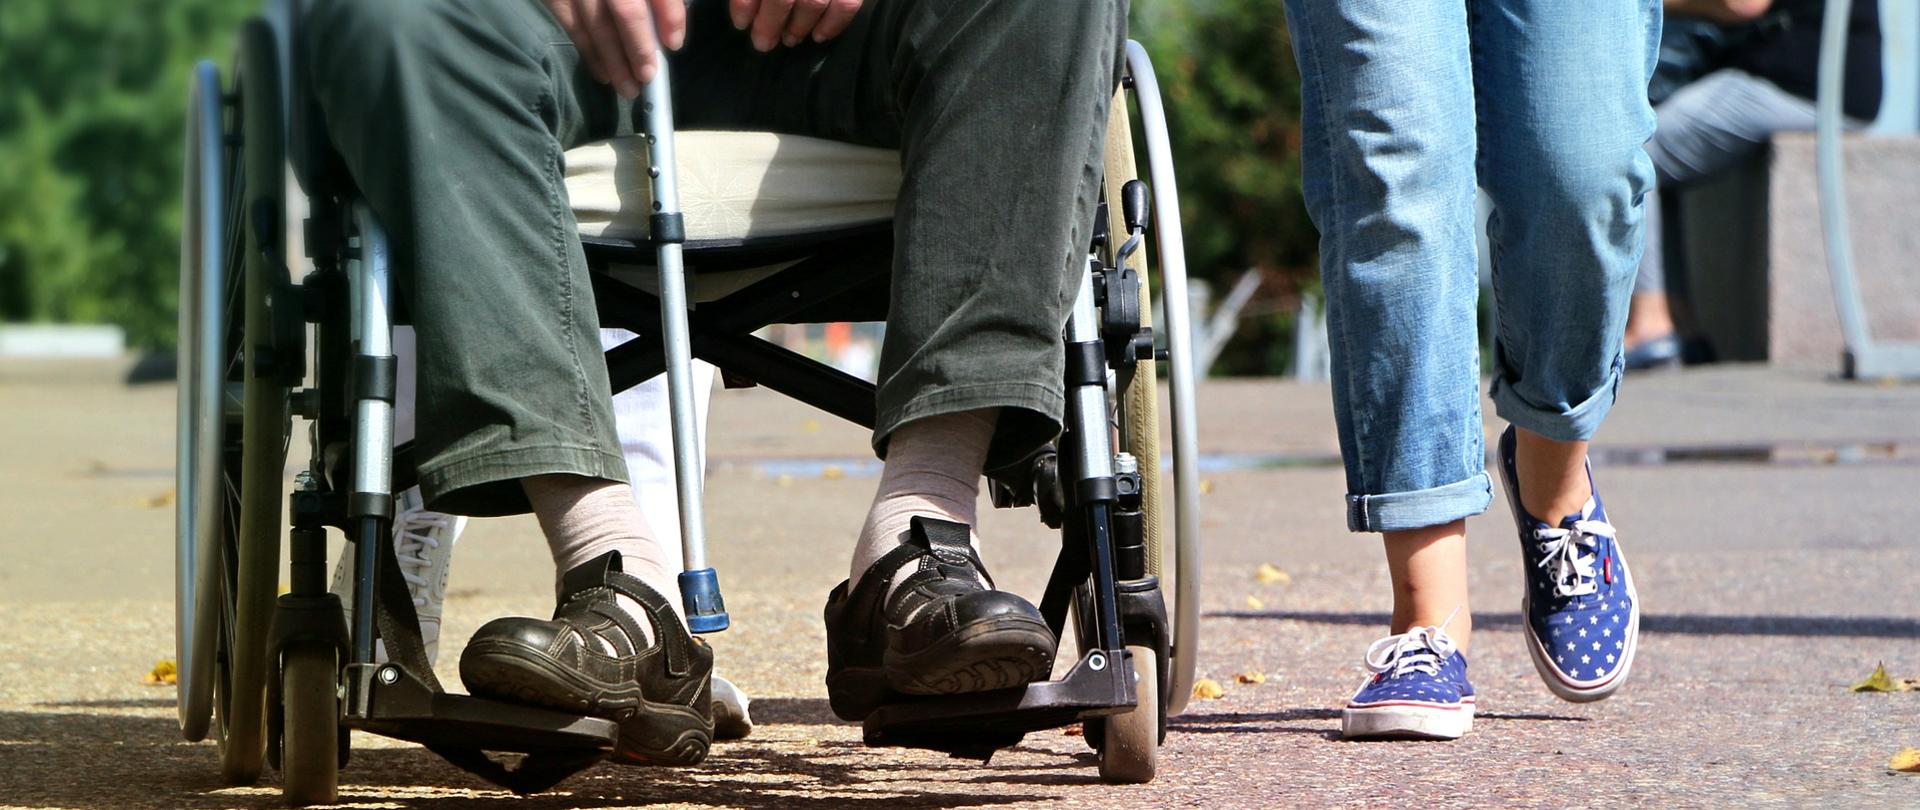 Po lewej osoba na wózku inwalidzkim, po prawej osoba sprawna idąca obok